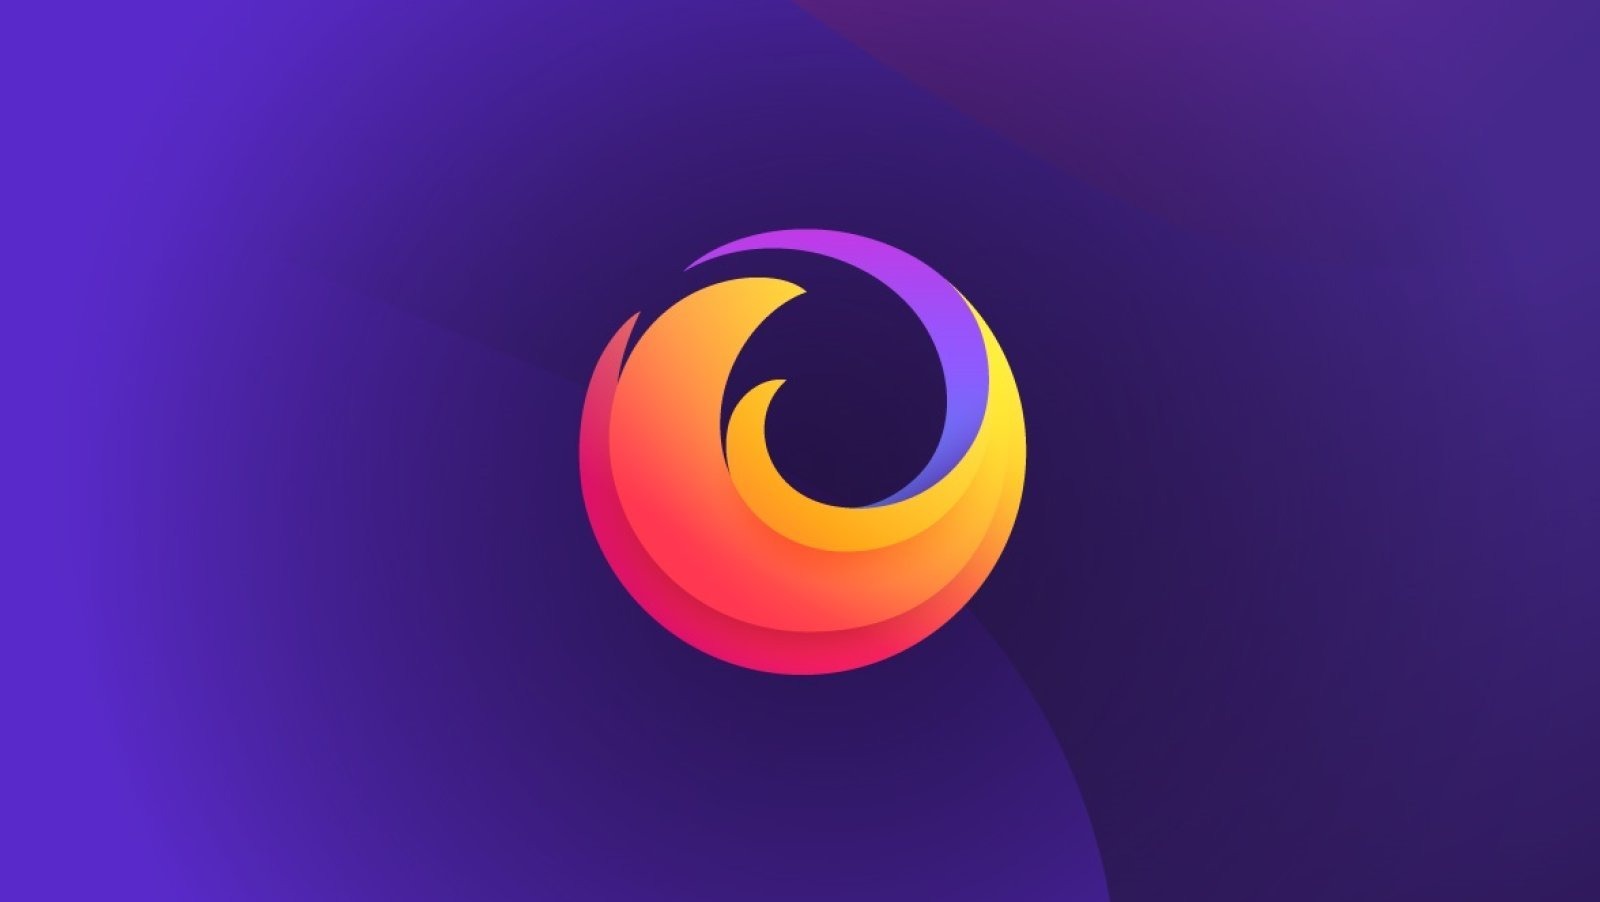 Mozilla Firefox sur Android : la migration vers un nouveau navigateur passe un cap